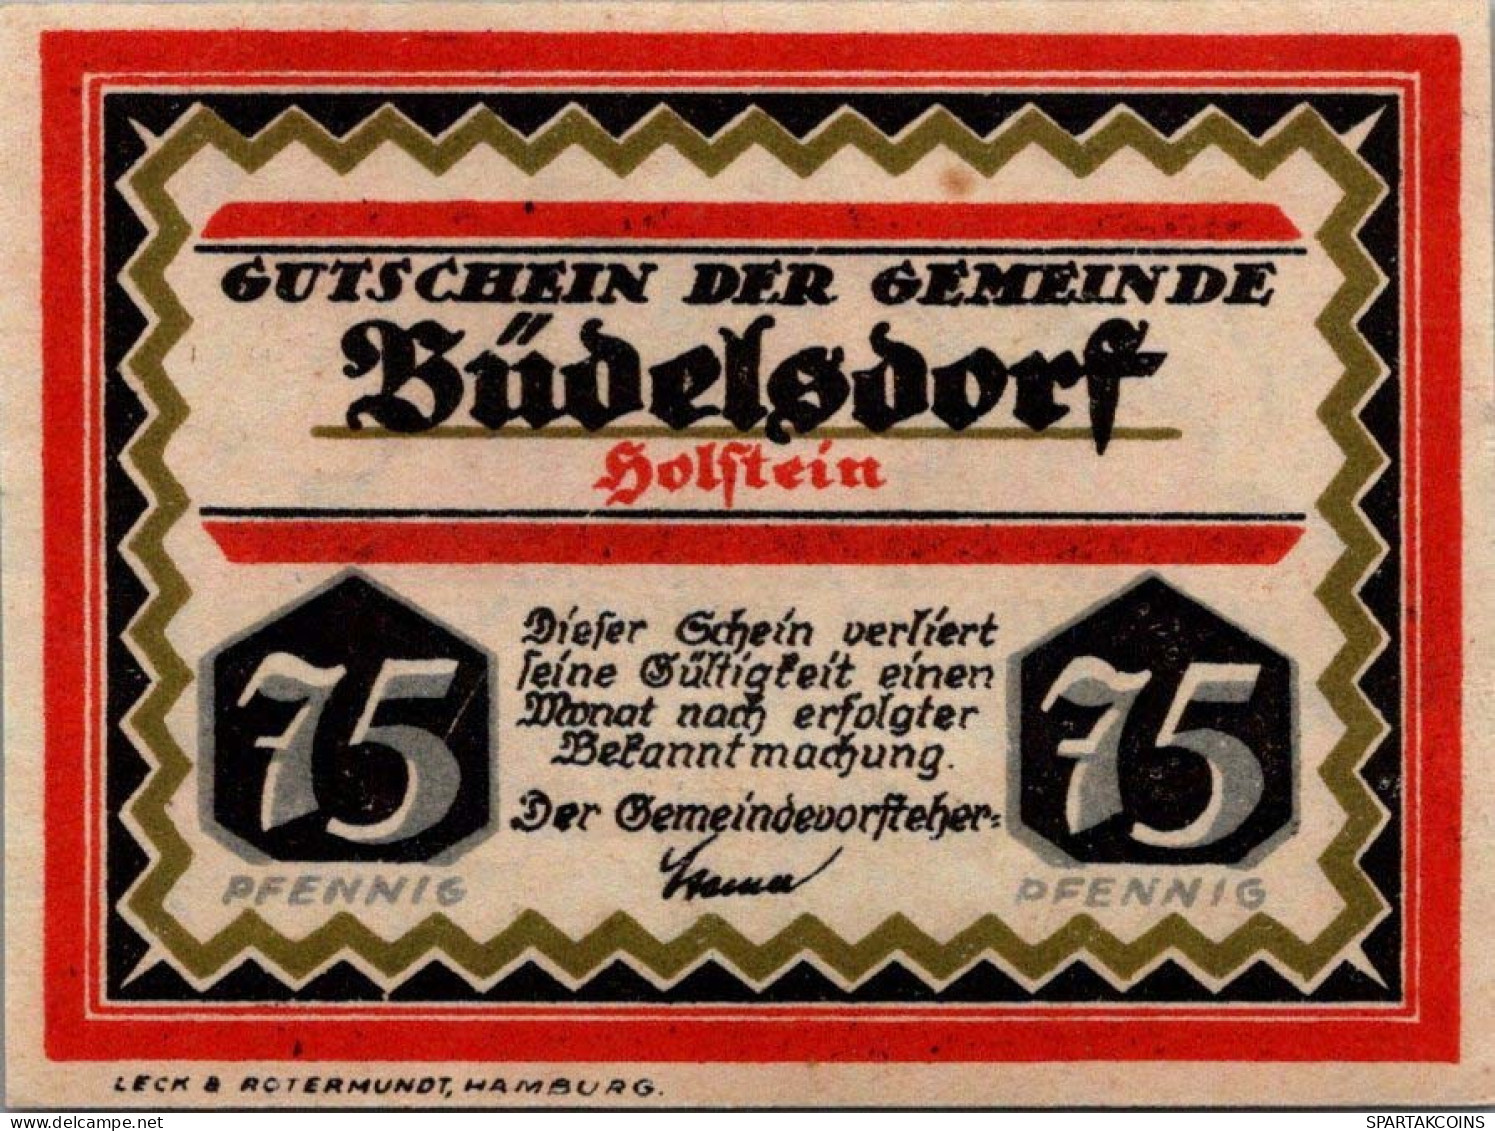 75 PFENNIG 1921 Stadt BÜDELSDORF Schleswig-Holstein UNC DEUTSCHLAND #PA317 - [11] Local Banknote Issues